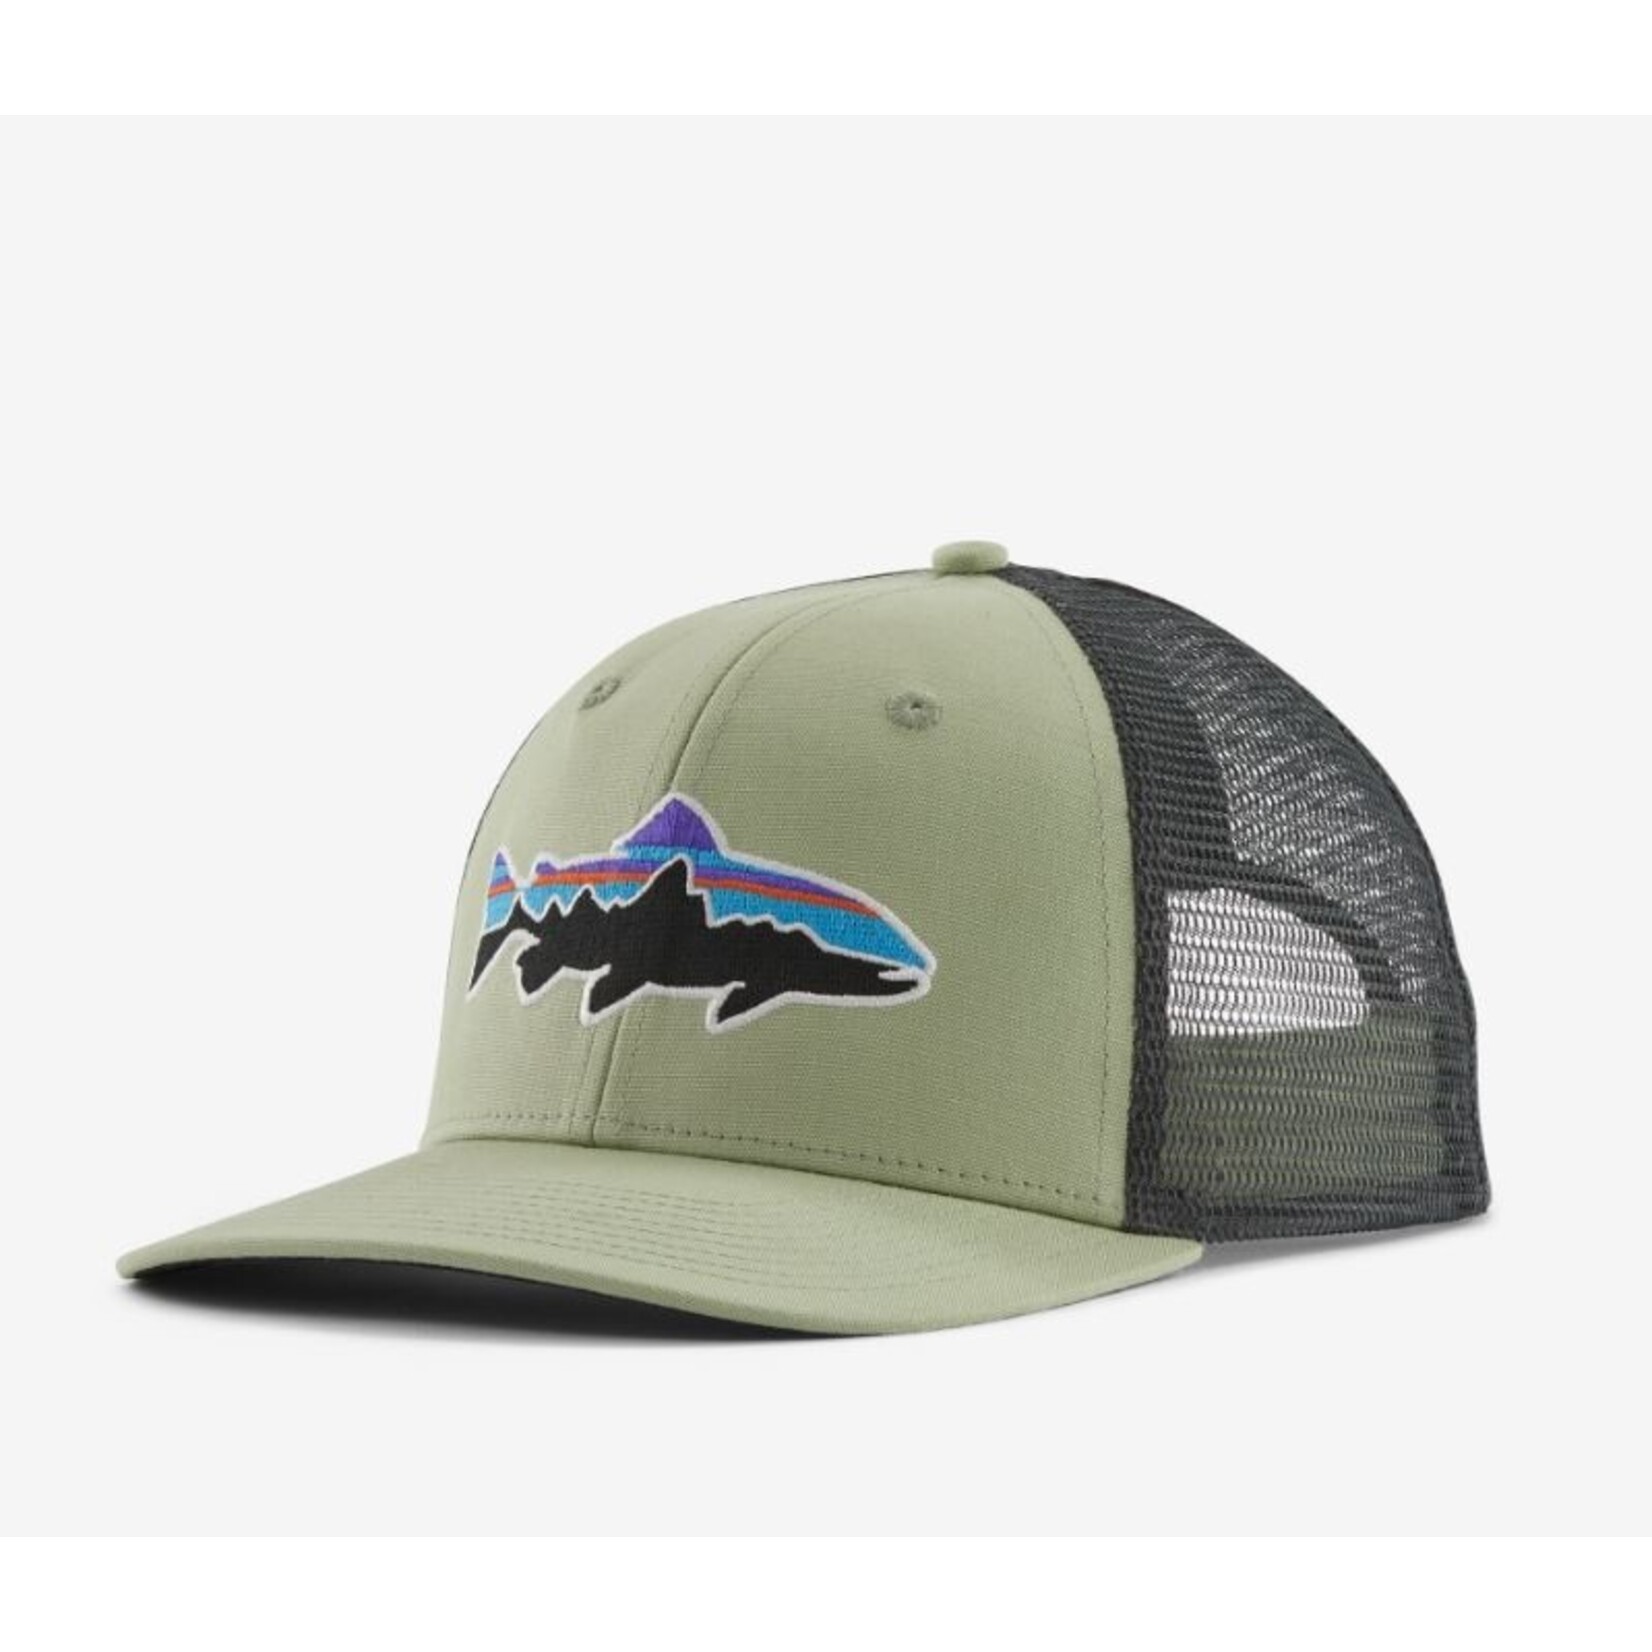  Black Lantern Trucker Hats - Fly Fishing Flies Hat